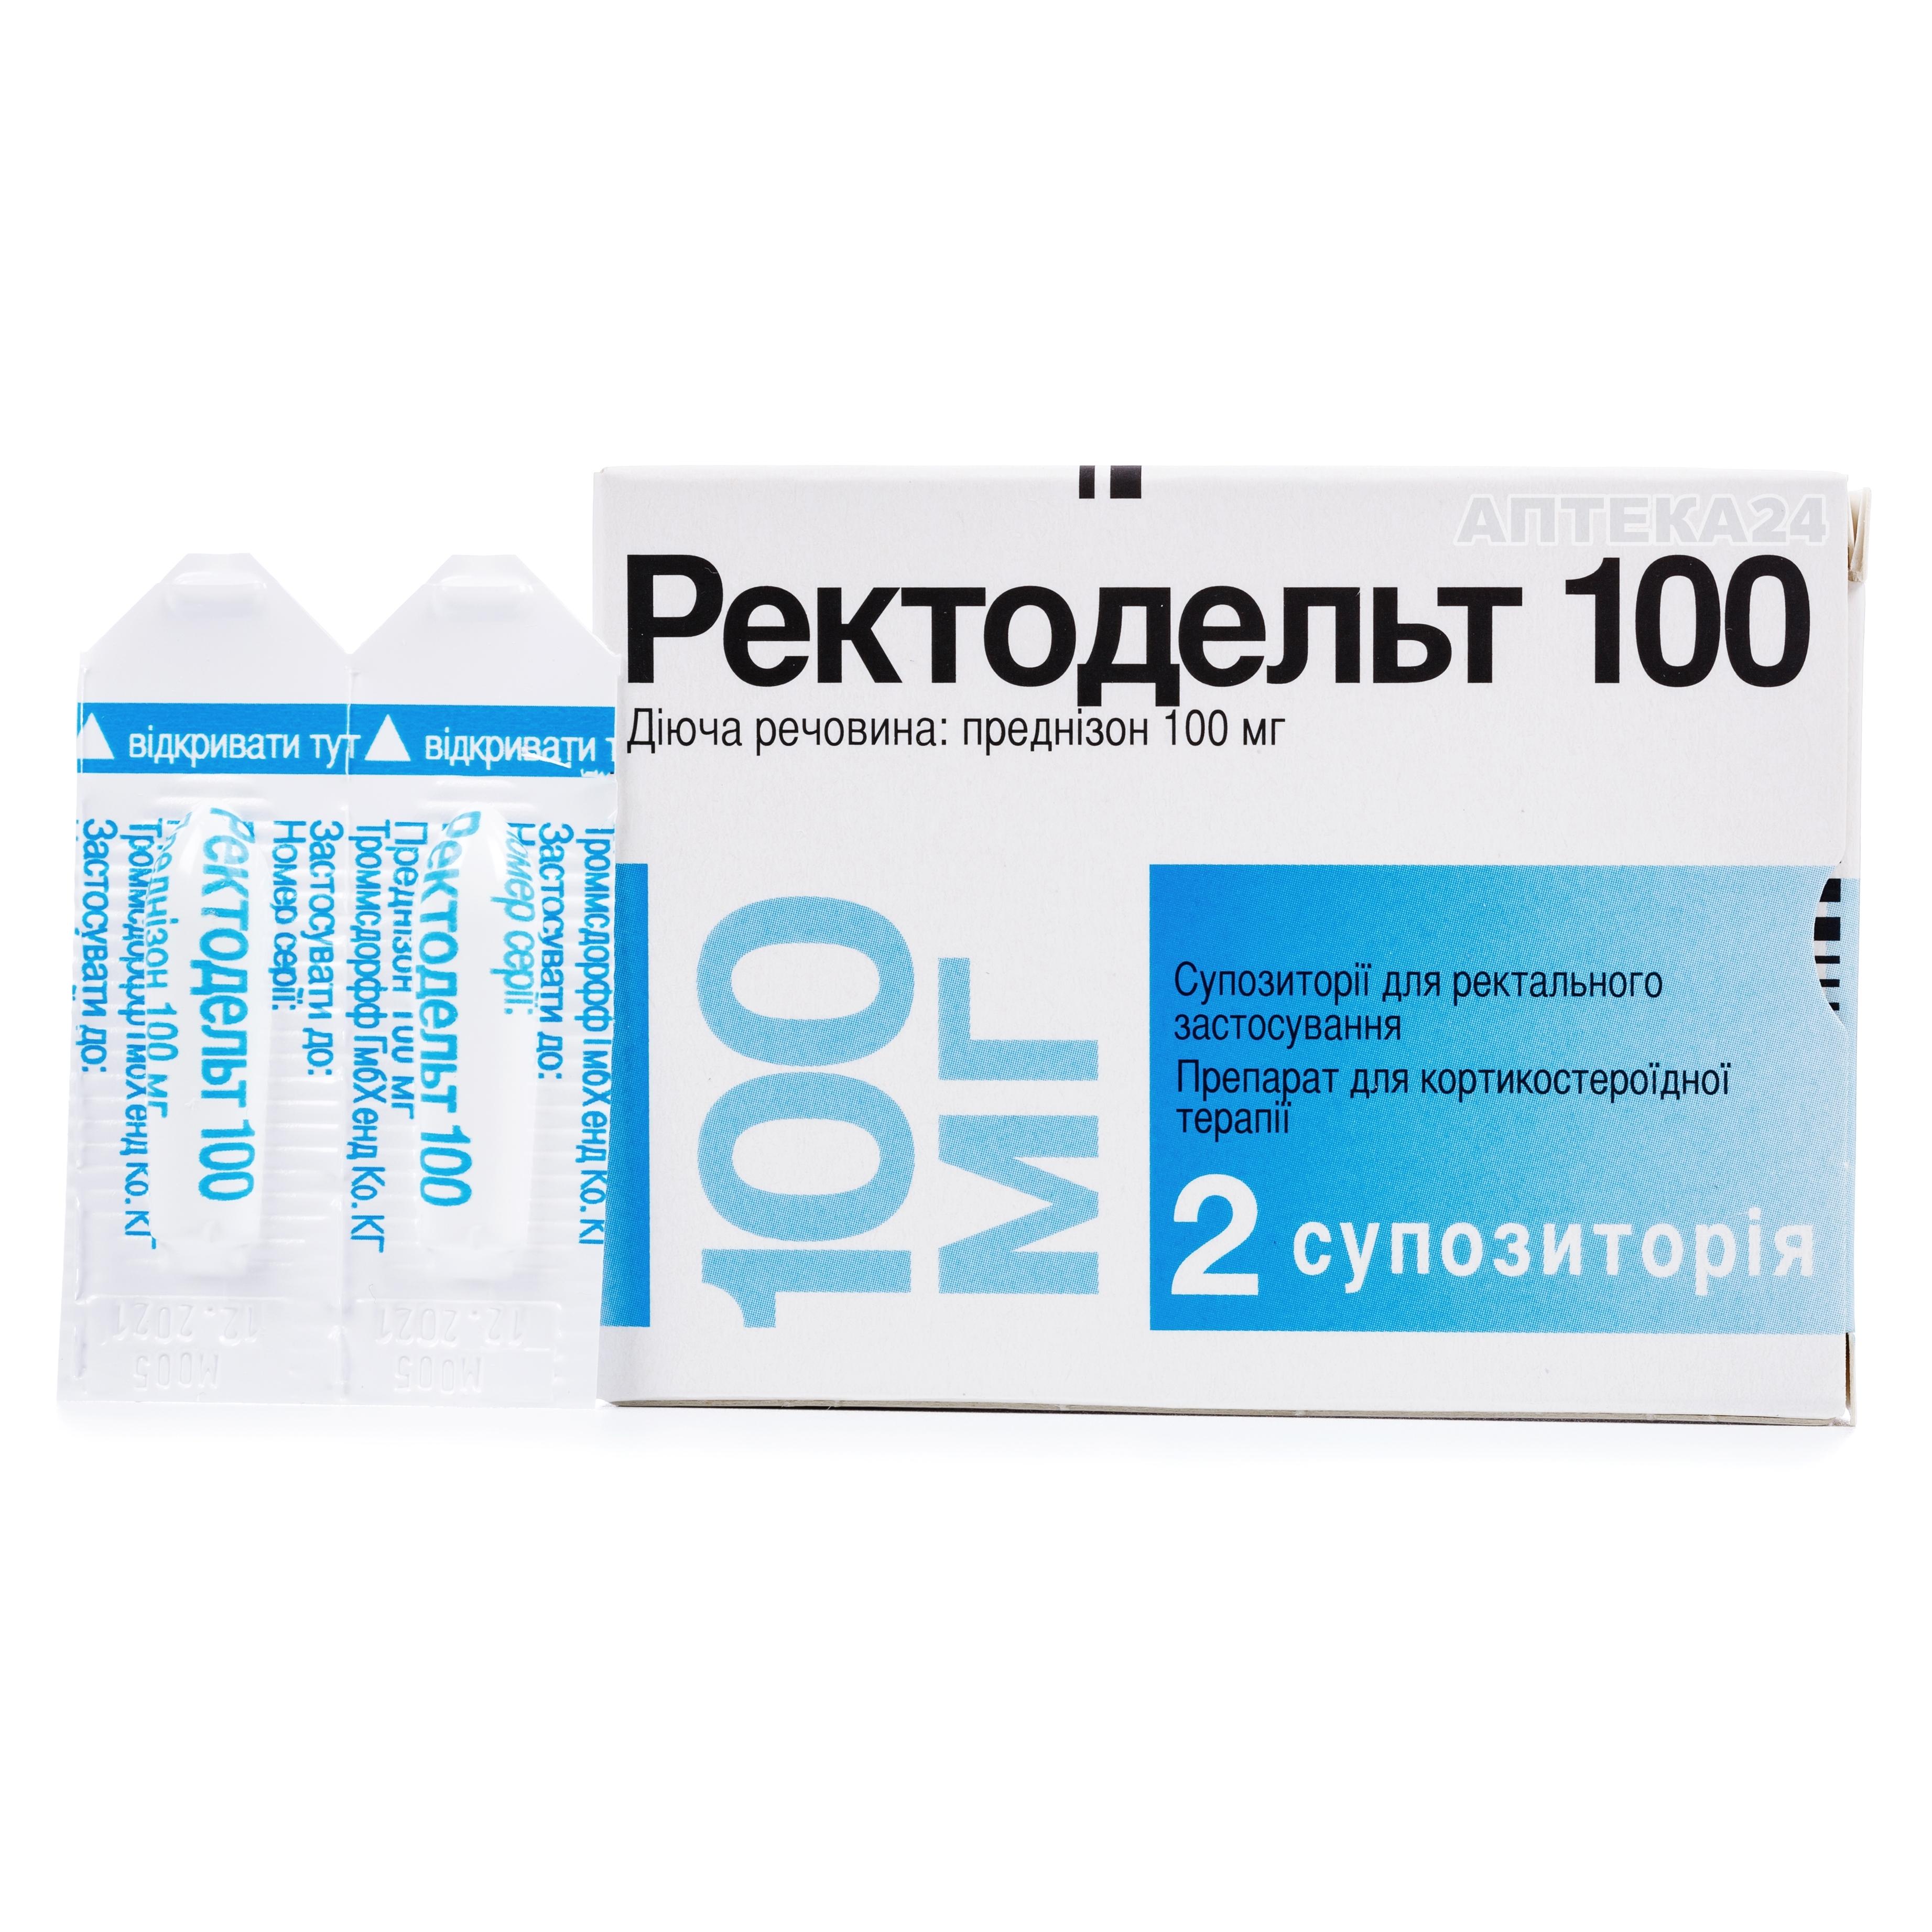 Ректодельт суппорозії ректальні по 100 мг, 2 шт.: інструкція, ціна .